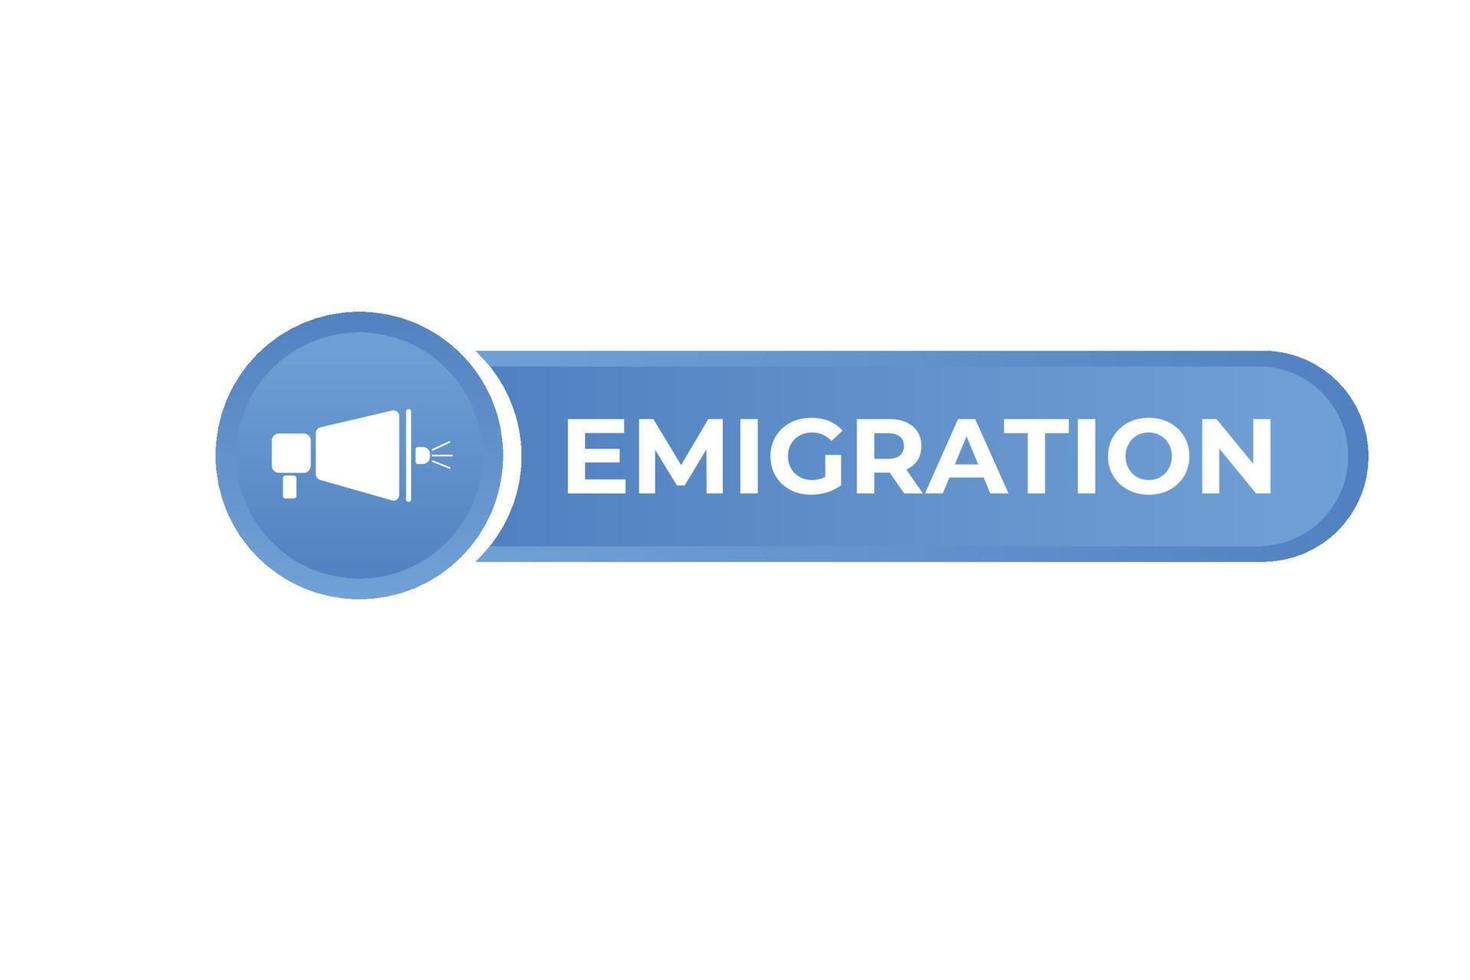 Emigration Button. Speech Bubble, Banner Label Emigration vector